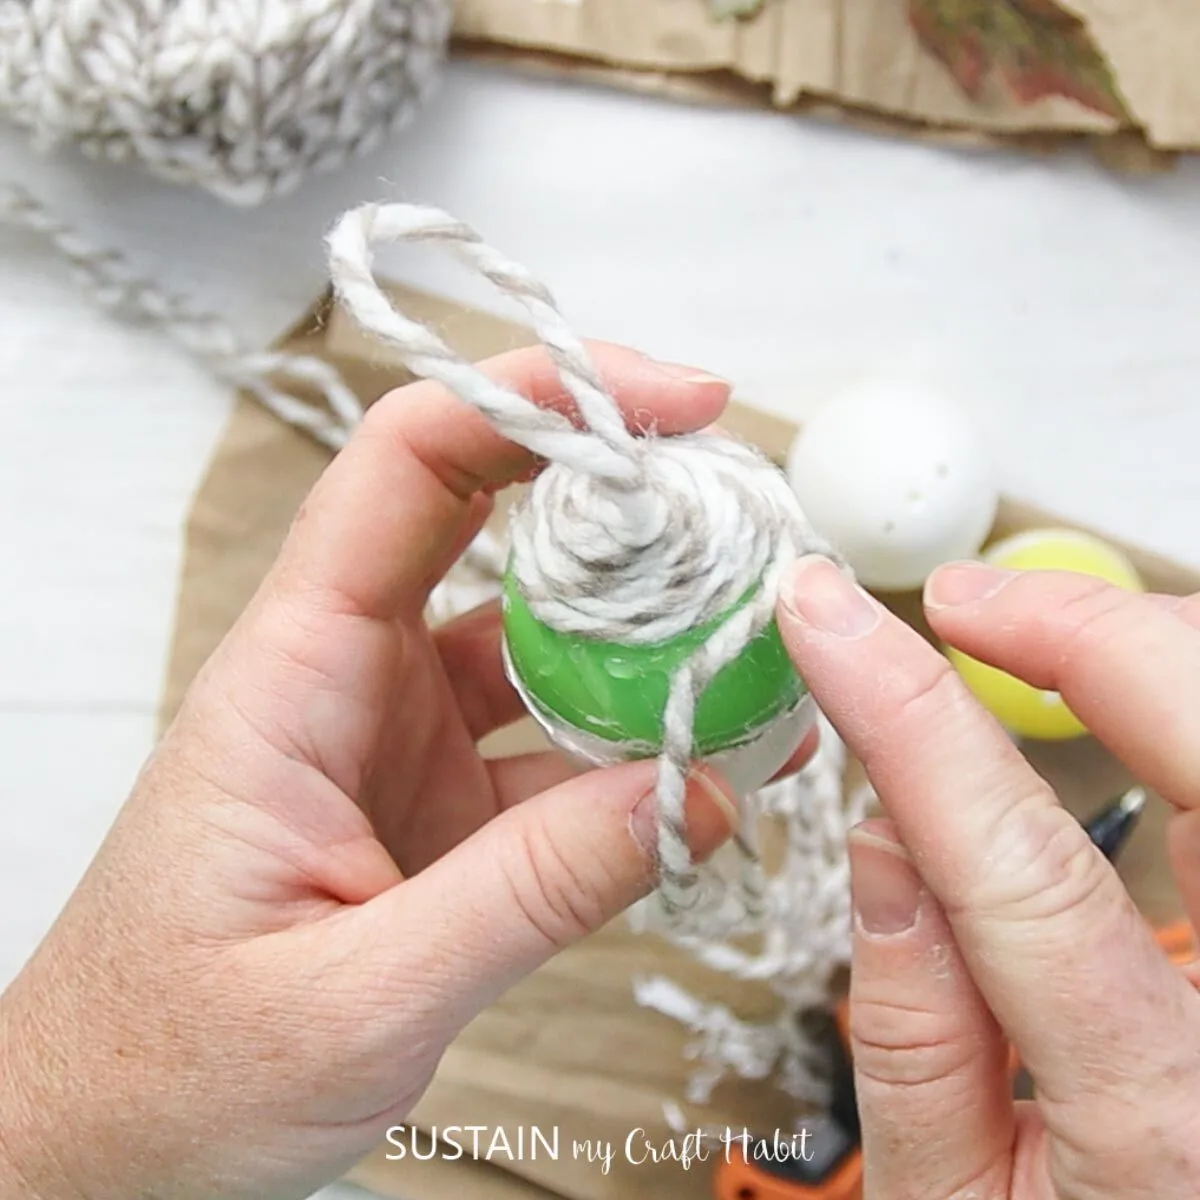 Gluing yarn around the plastic egg.